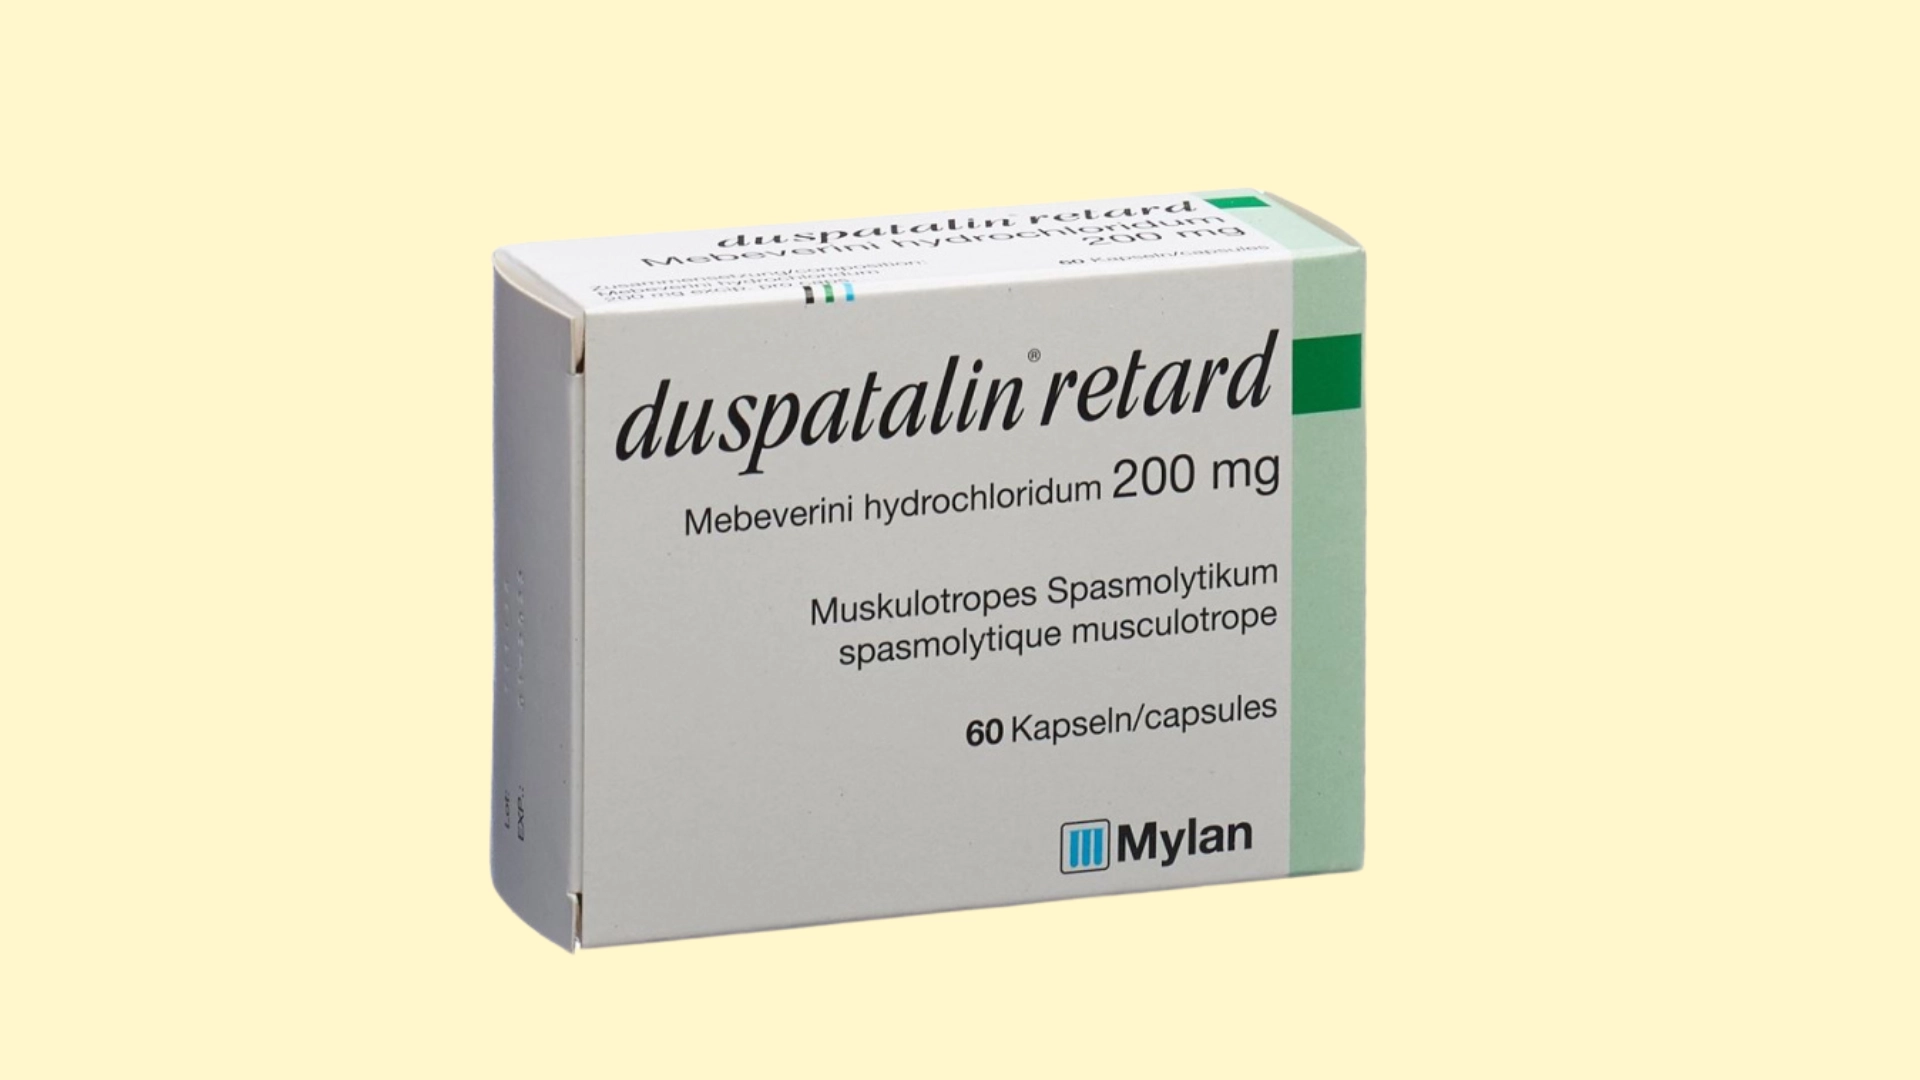 Duspatalin retard E recepta  recepta online z konsultacją | cena  dawkowanie  przeciwwskazania